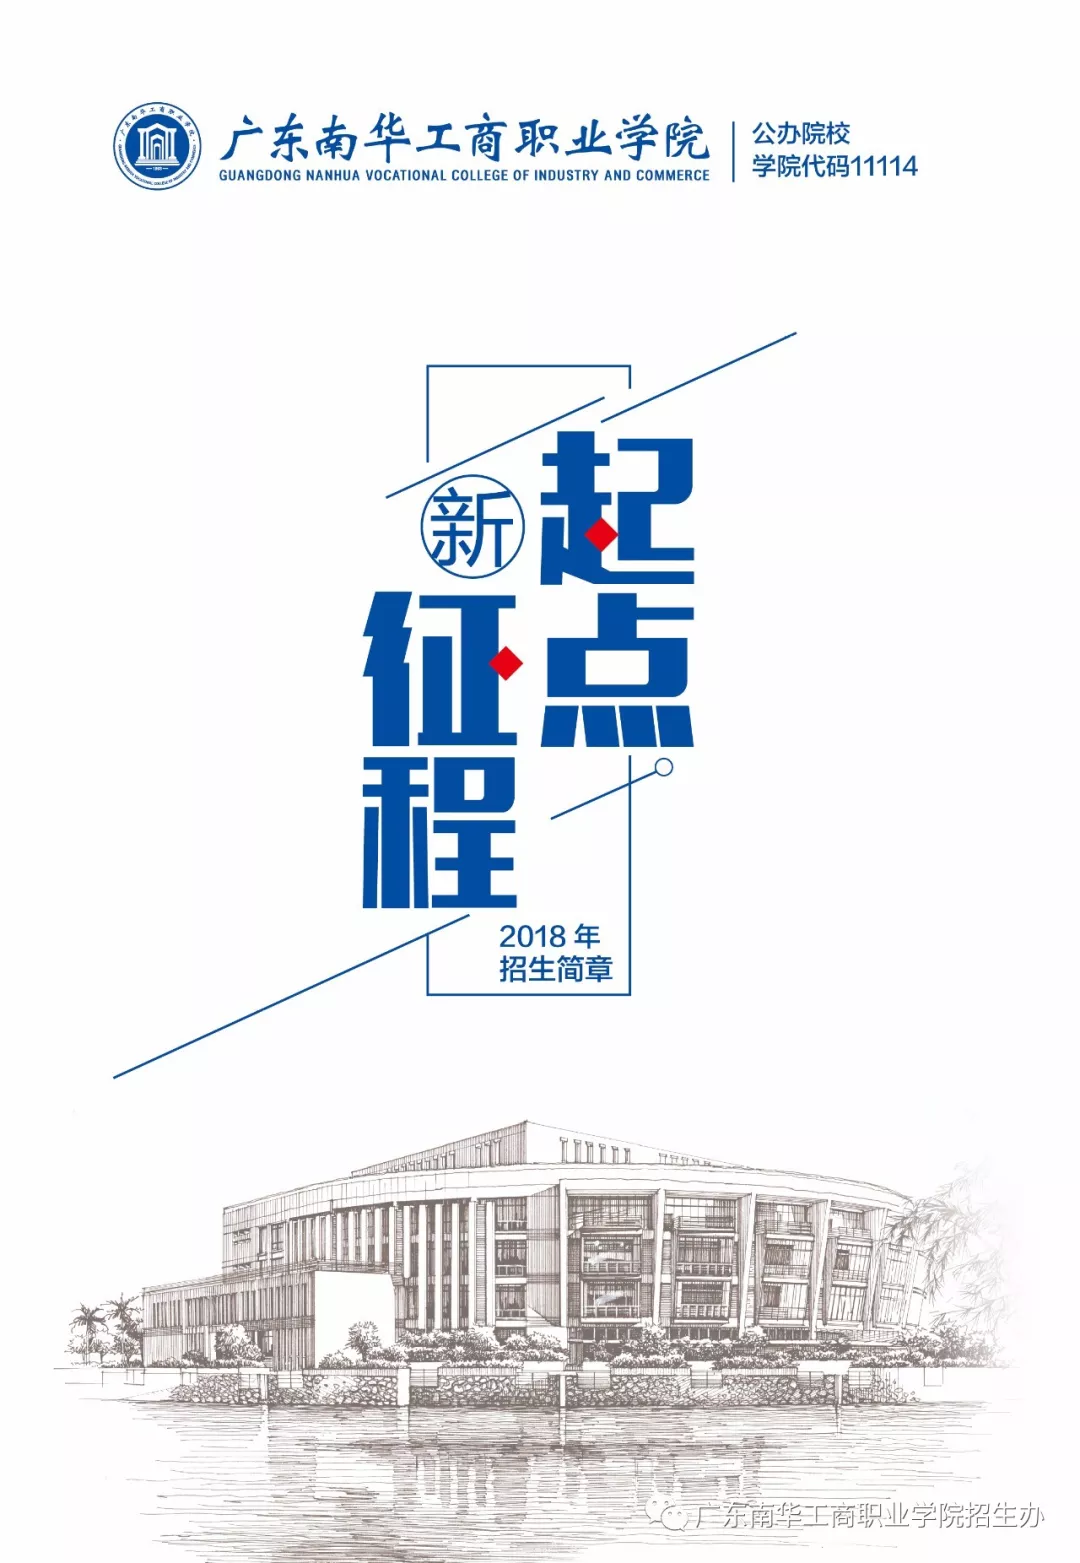 广东南华工商职业学院2018年下载伟德app伟德BETVlCTOR1946 app招生计划